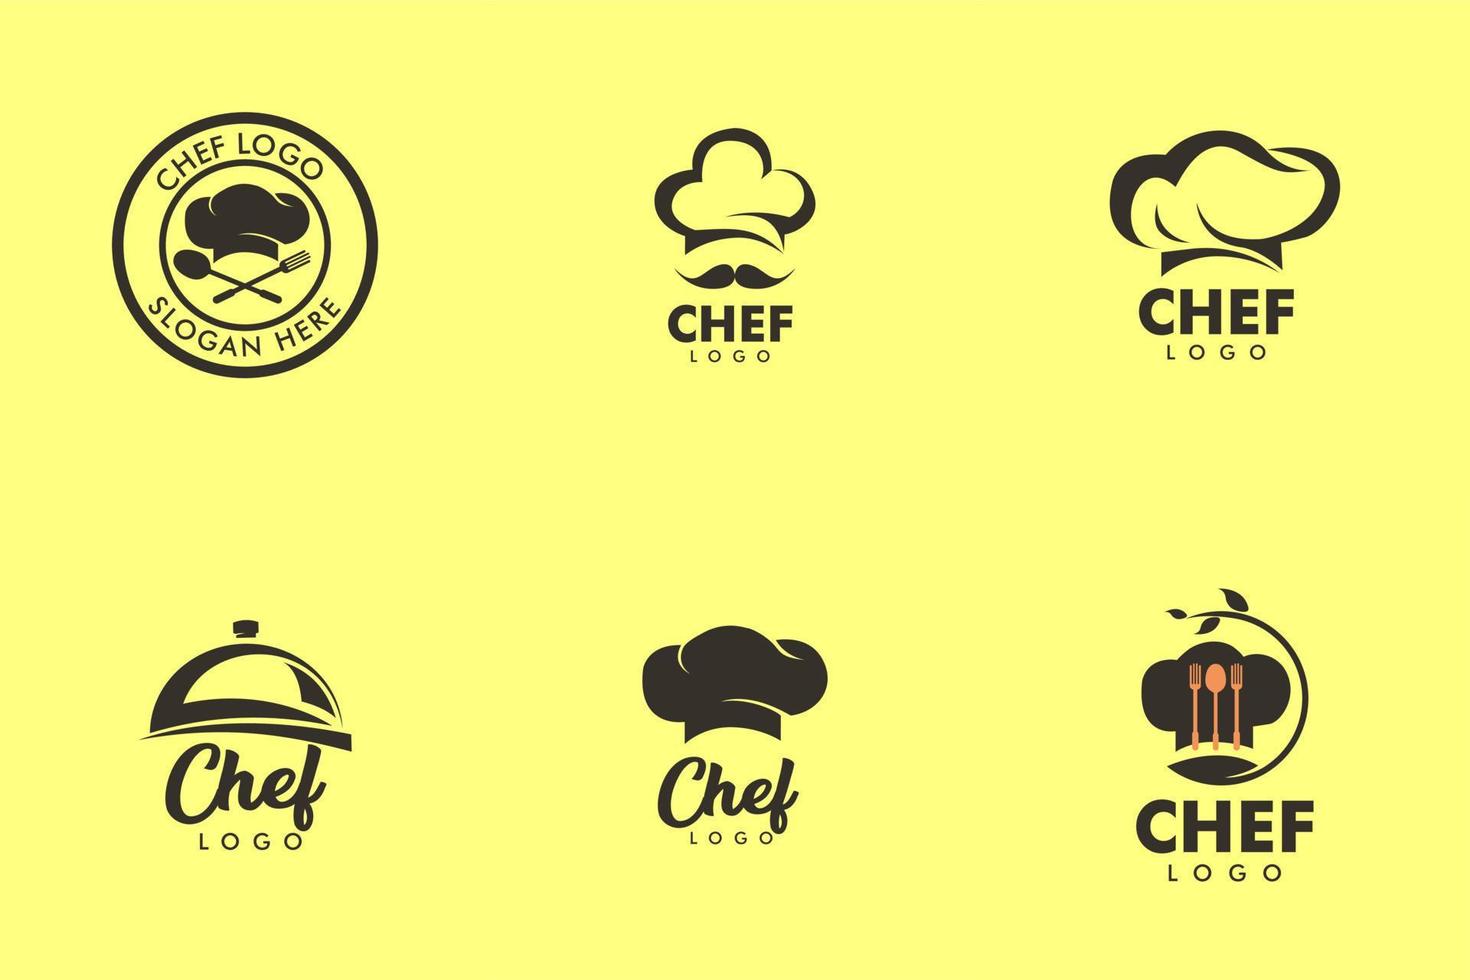 definir o modelo de logotipo de vetor de mestre chef. use este logotipo para um chef, restaurante, catering ou qualquer serviço relacionado a alimentos. ilustração em vetor logotipo. estilo limpo e moderno em fundo branco